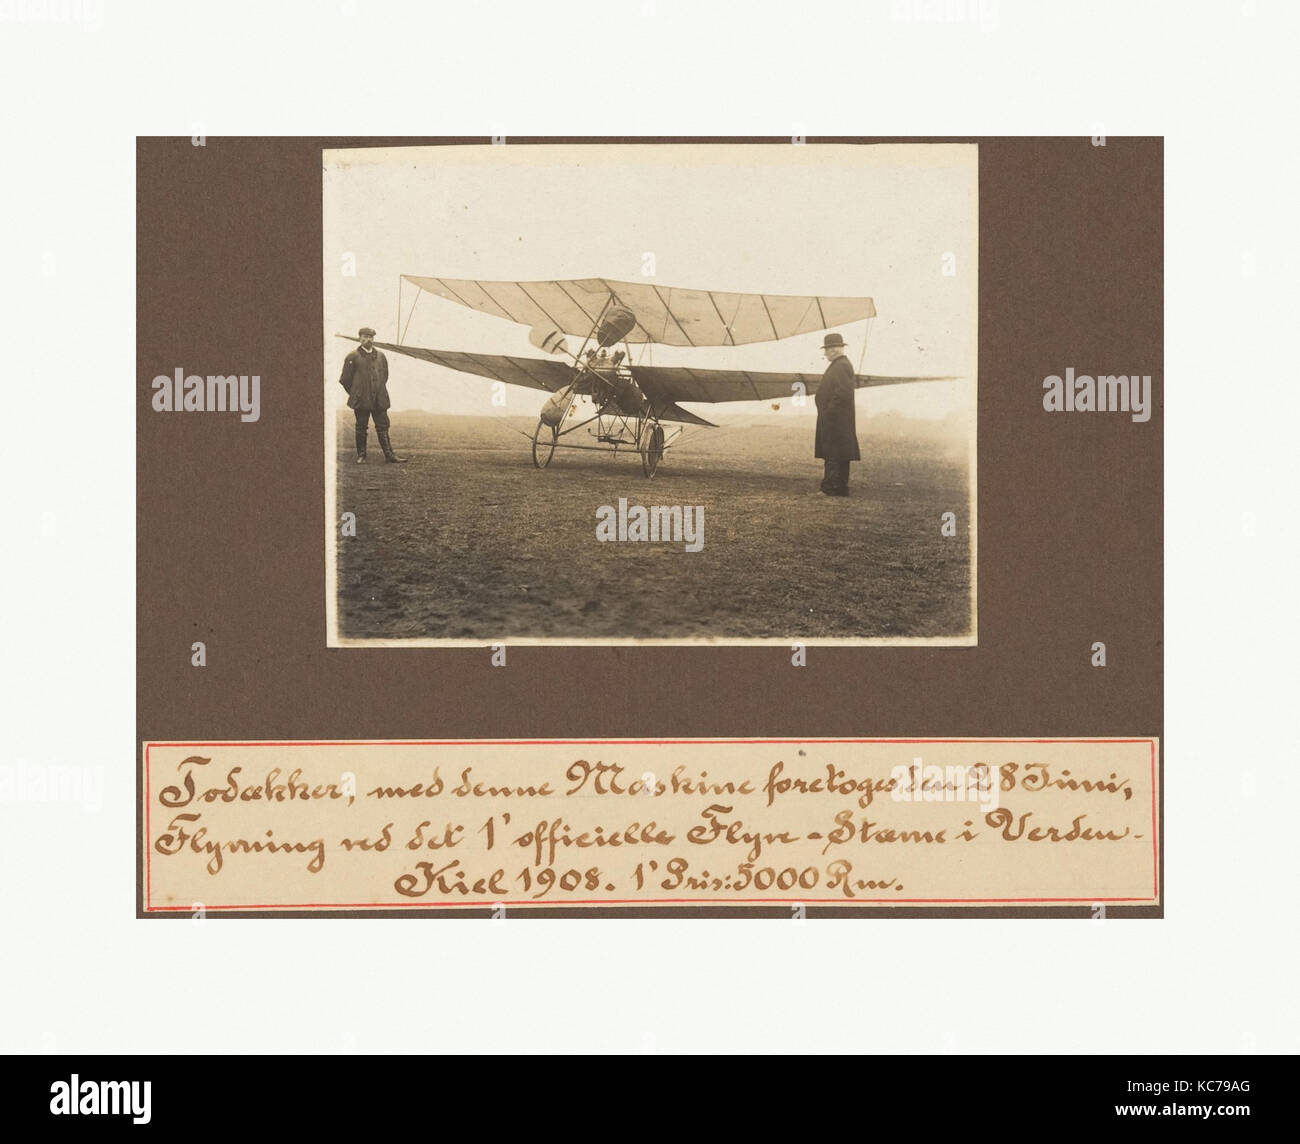 Todakker, med denne Maskine forekoges Seu 28 Tuni, Flyvring ved SX 1'officielle Flyve-Stame ho Verdeu Kiel 1908. 1'Pris: 5000 RM Foto Stock